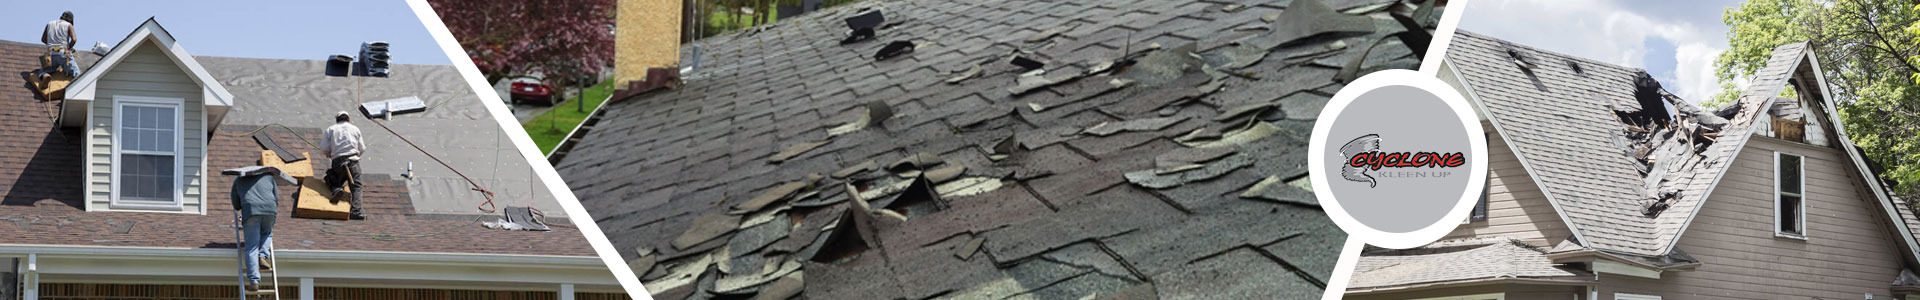 Residential Roof Damage Repairing around Pueblo